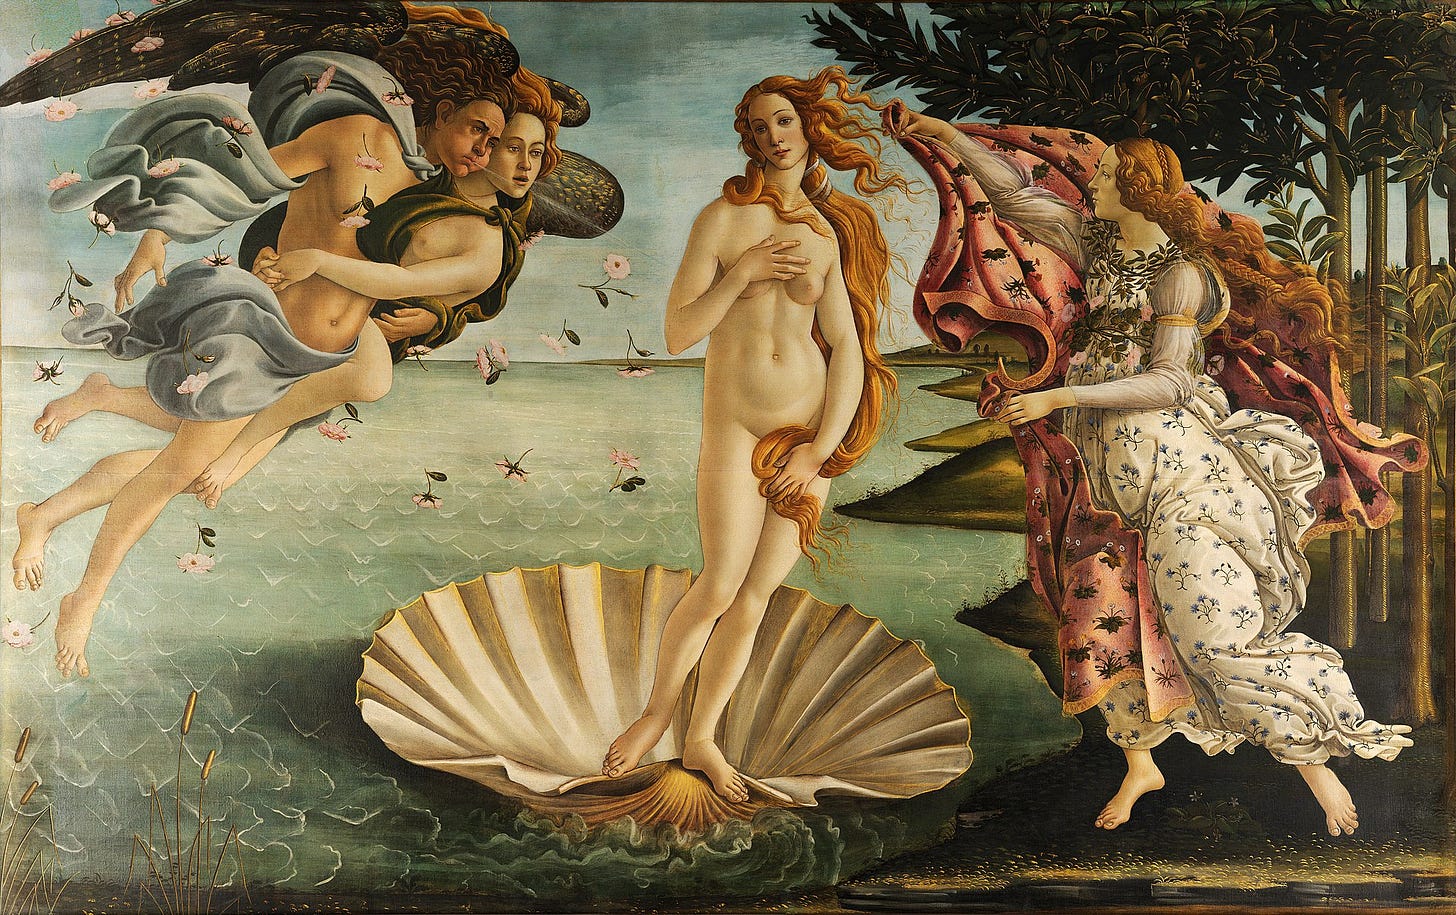 Pintura representando a deusa Vênus, tendo emergido do mar como uma mulher plenamente crescida, chegando à costa marítima. A concha do mar em que ela se ergue era um símbolo na antiguidade clássica para a vulva de uma mulher. 